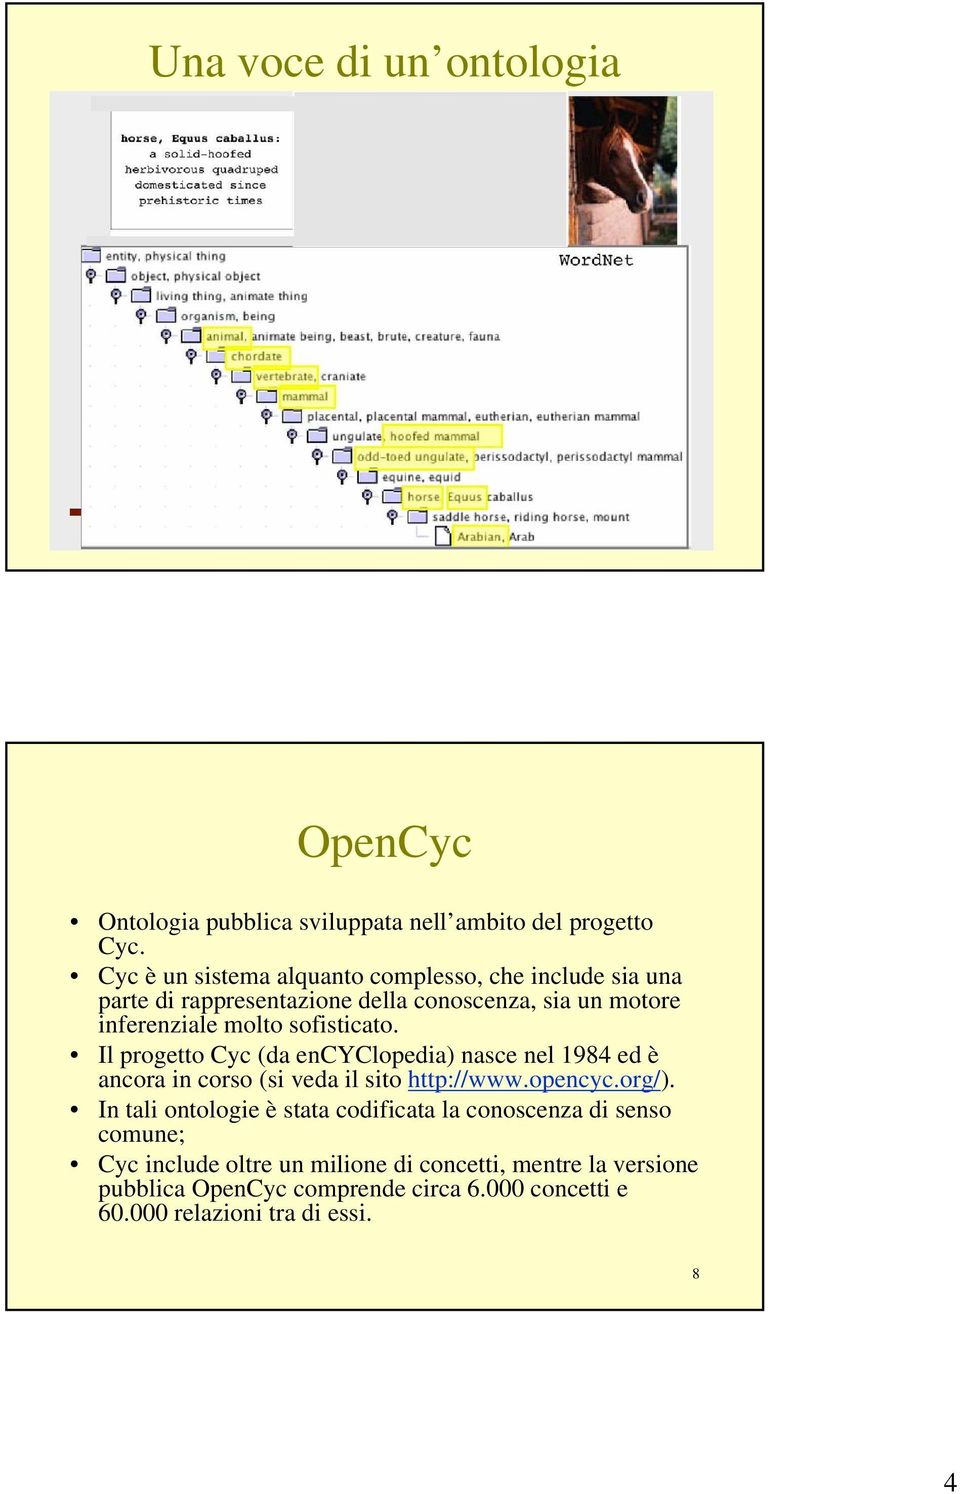 sofisticato. Il progetto Cyc (da encyclopedia) nasce nel 1984 ed è ancora in corso (si veda il sito http://www.opencyc.org/).